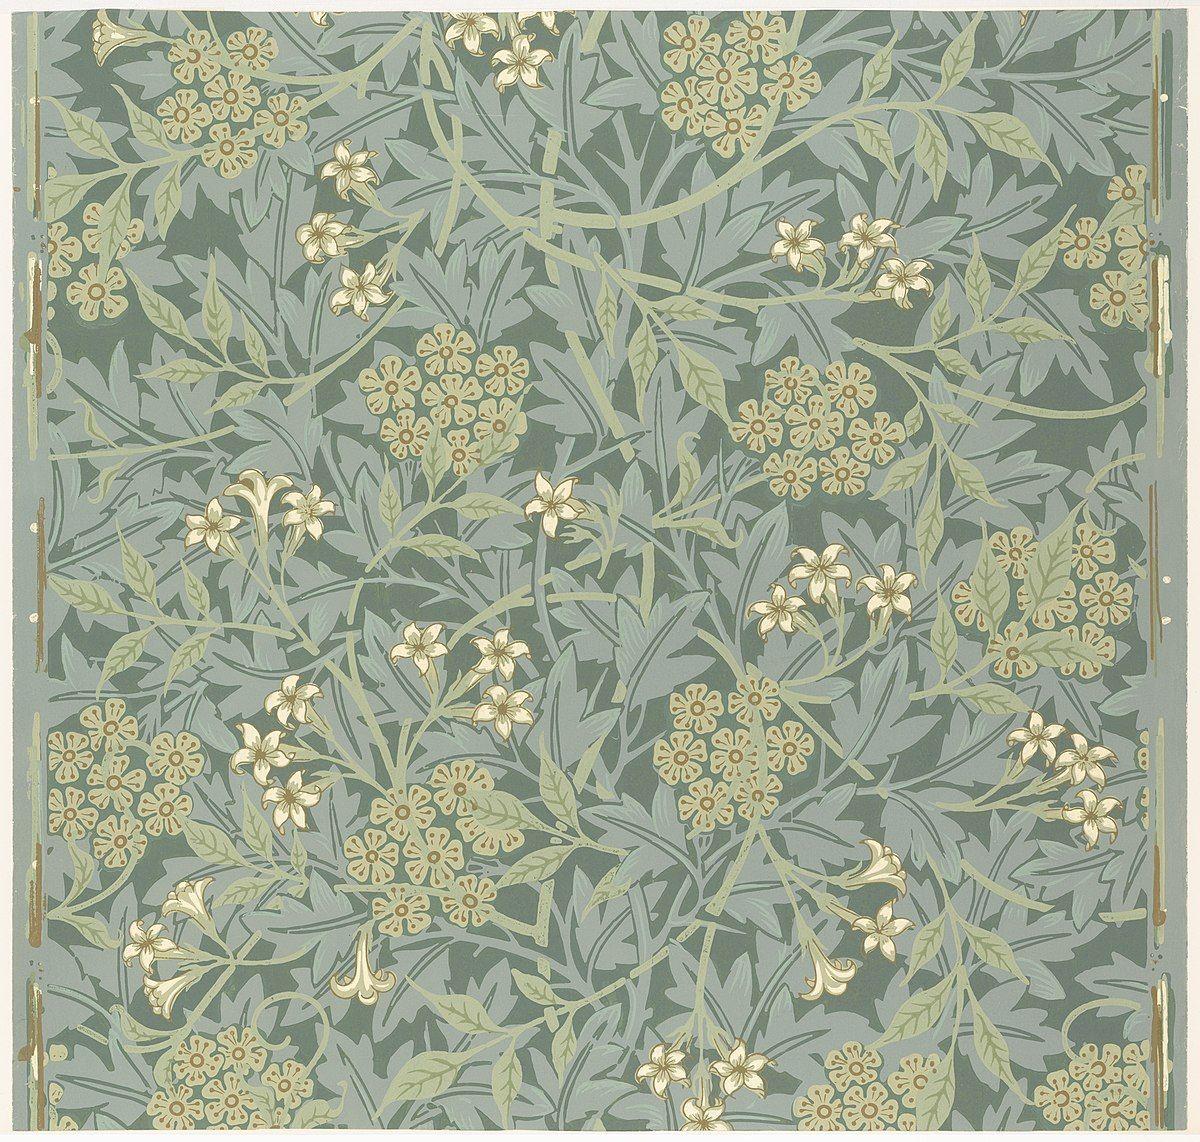 William Morris Wallpapers - Top Những Hình Ảnh Đẹp